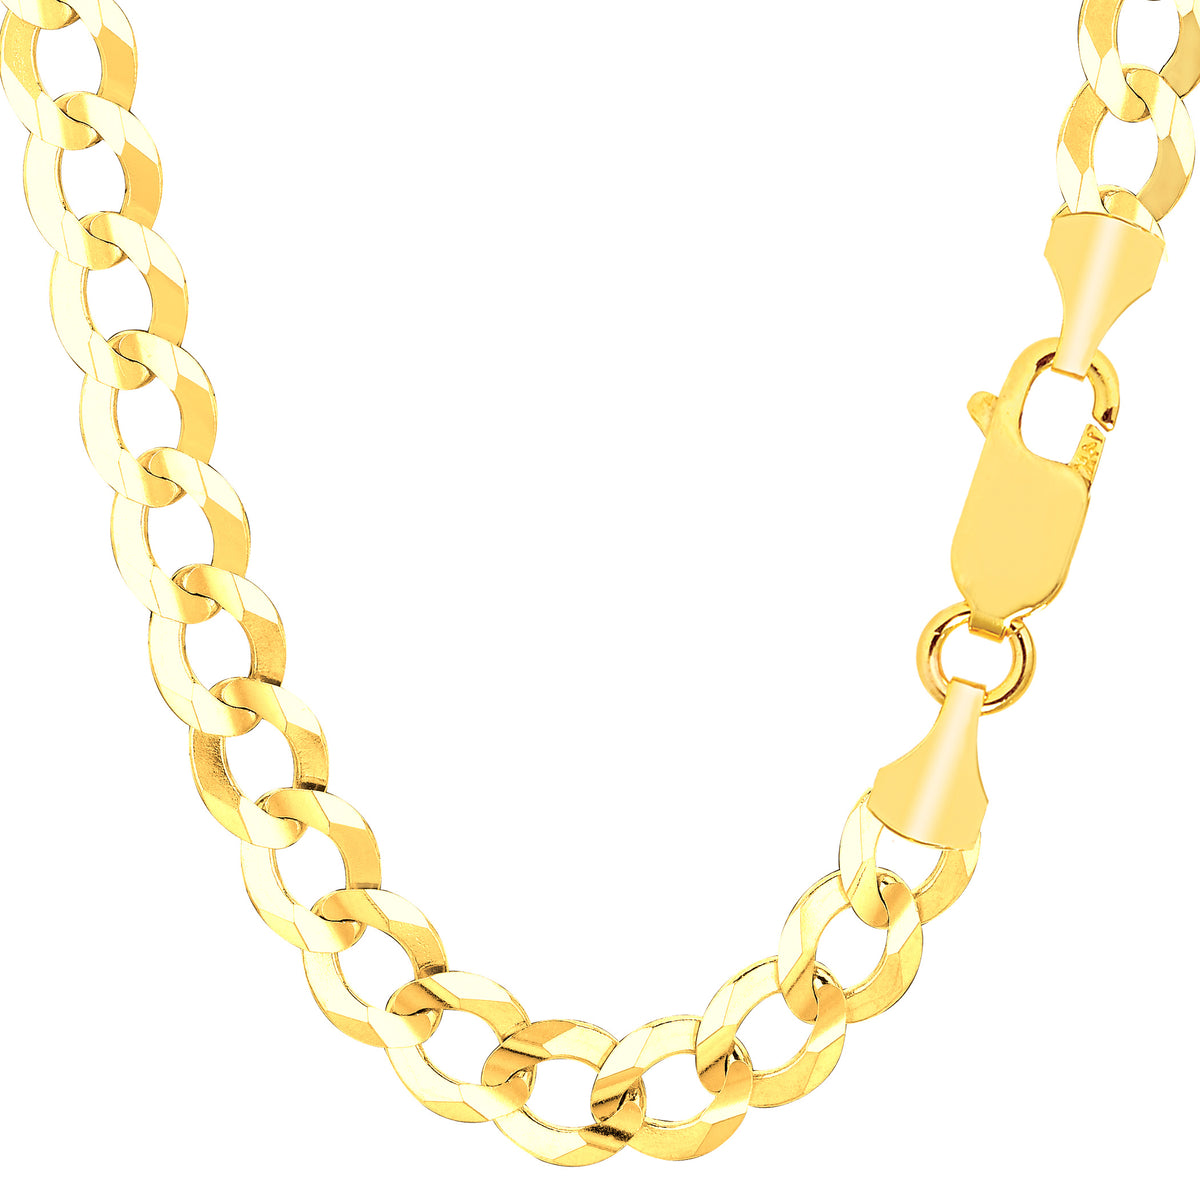 Pulsera cómoda de cadena curvada de oro macizo amarillo de 14 k, joyería fina de diseño de 8,2 mm y 8,5 pulgadas para hombres y mujeres